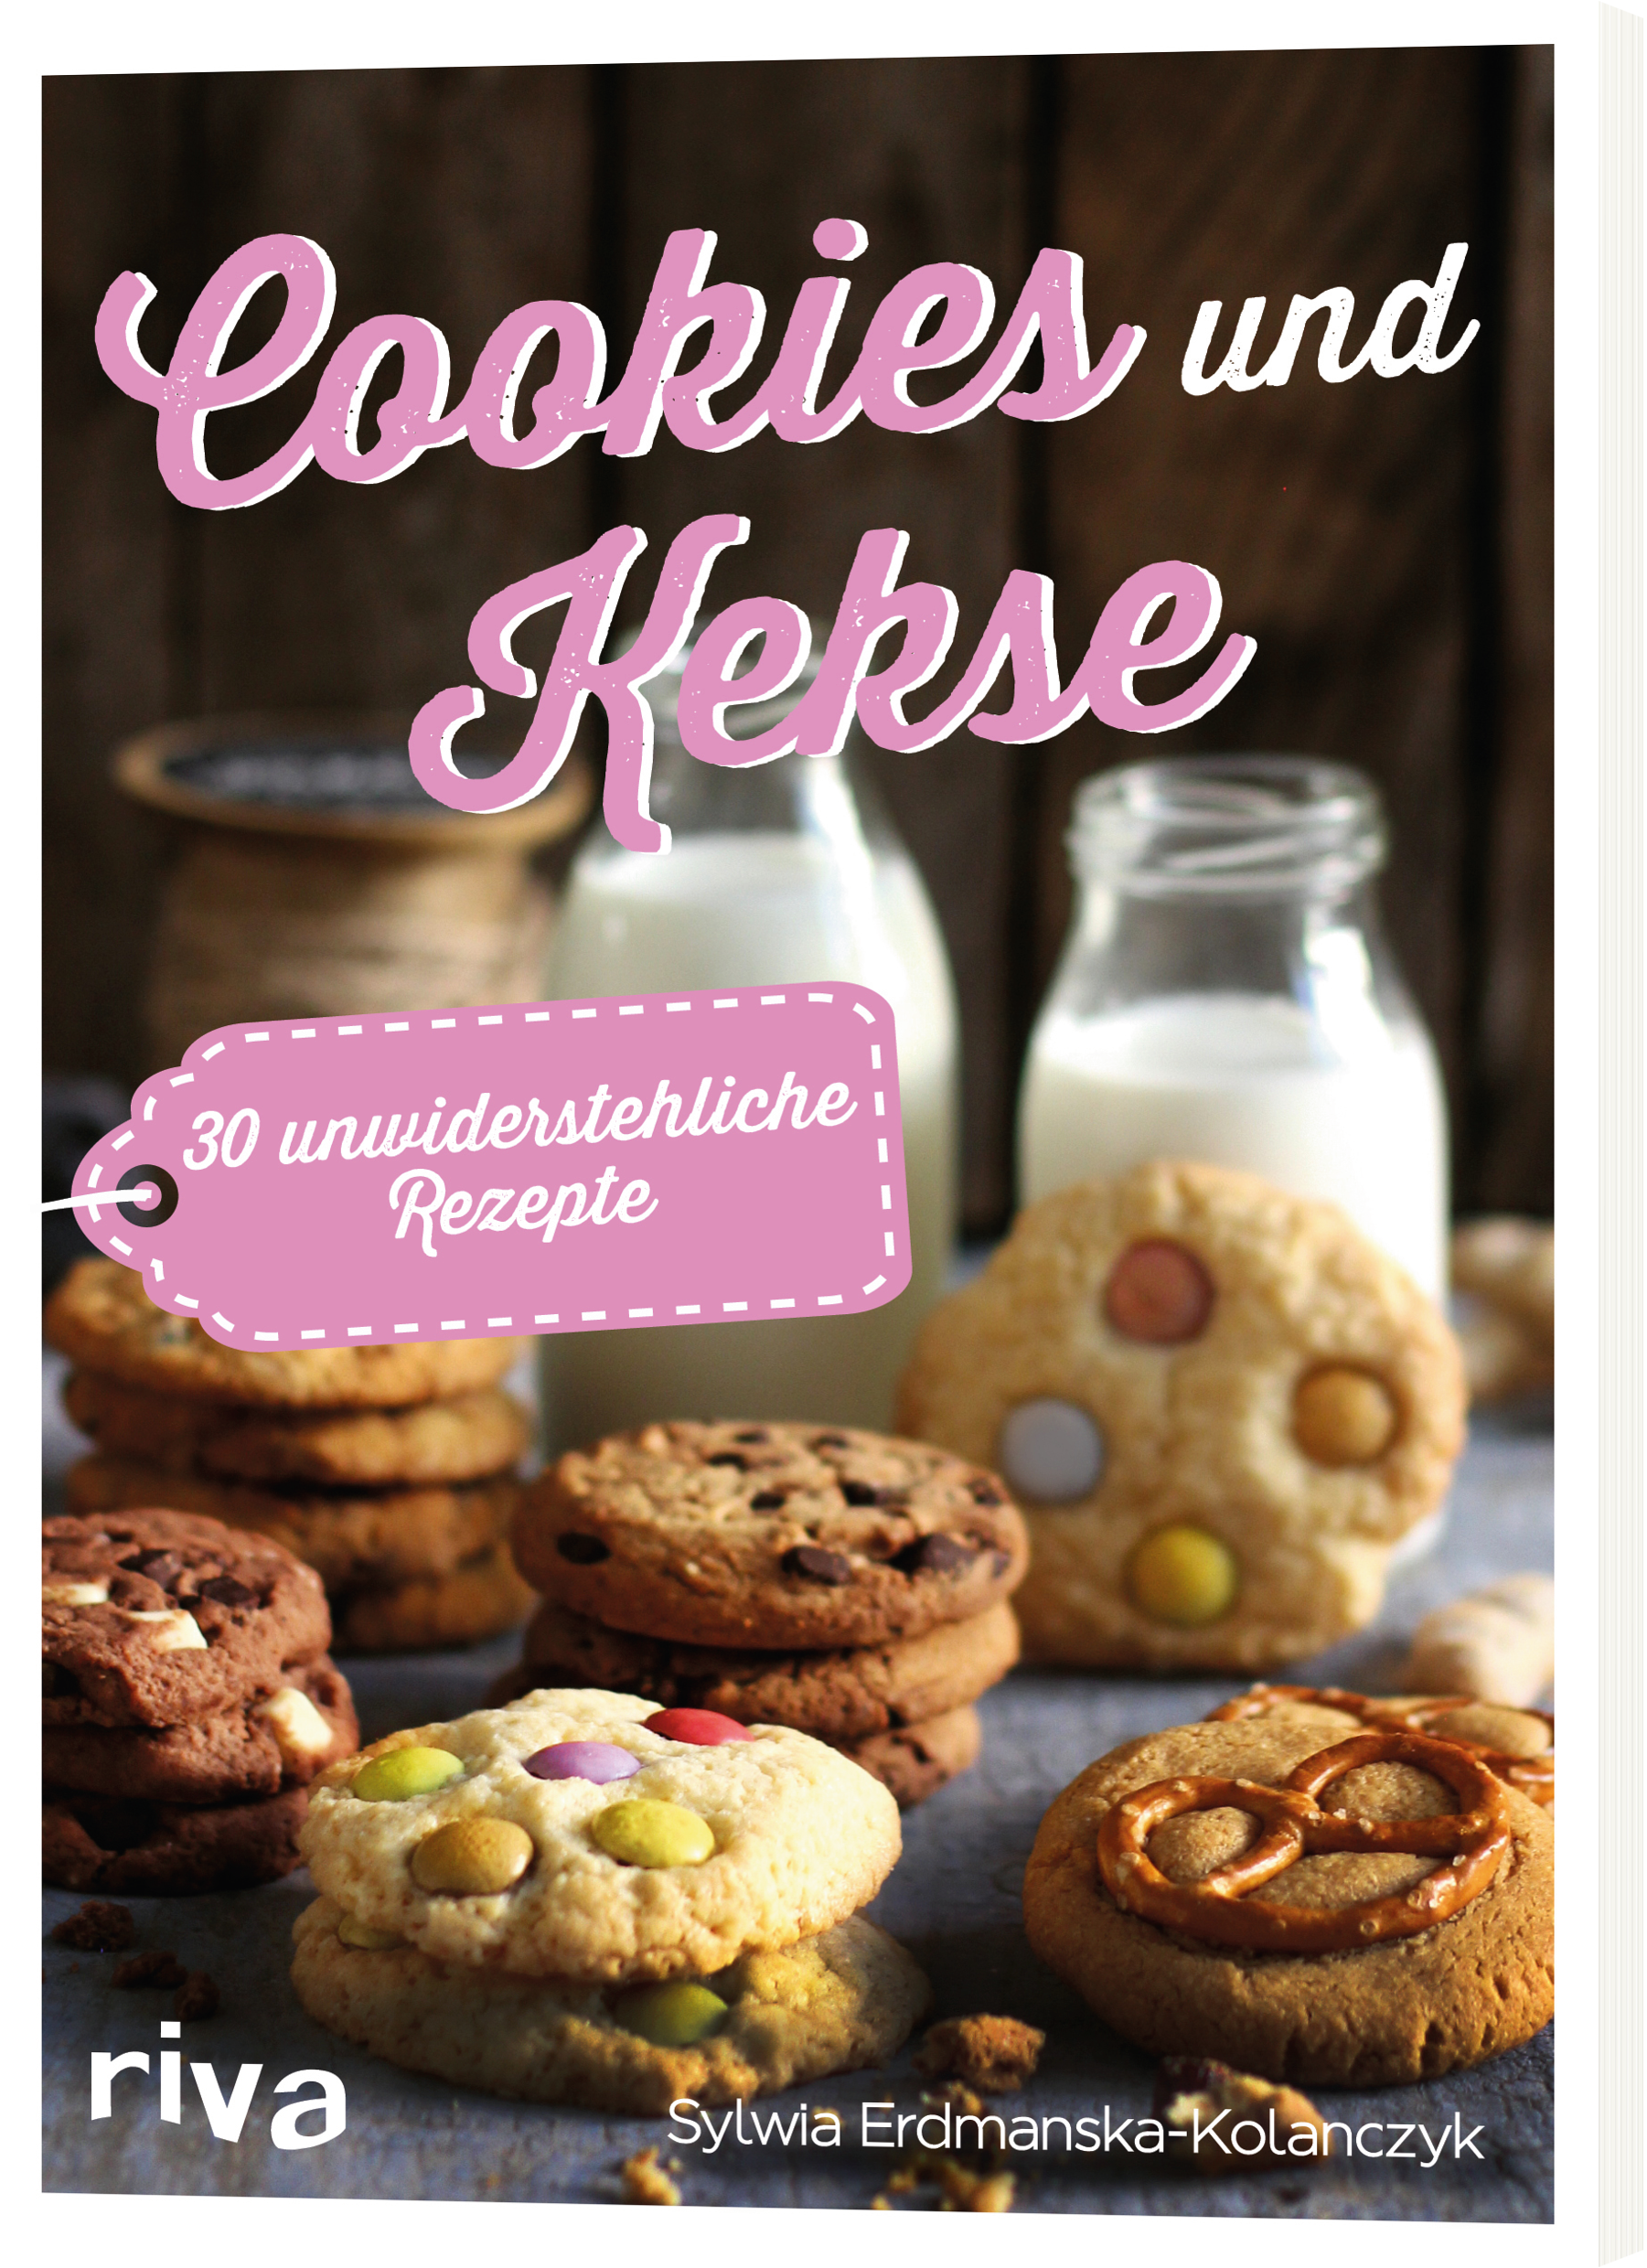 Backbuchvorstellung Cookies und Kekse